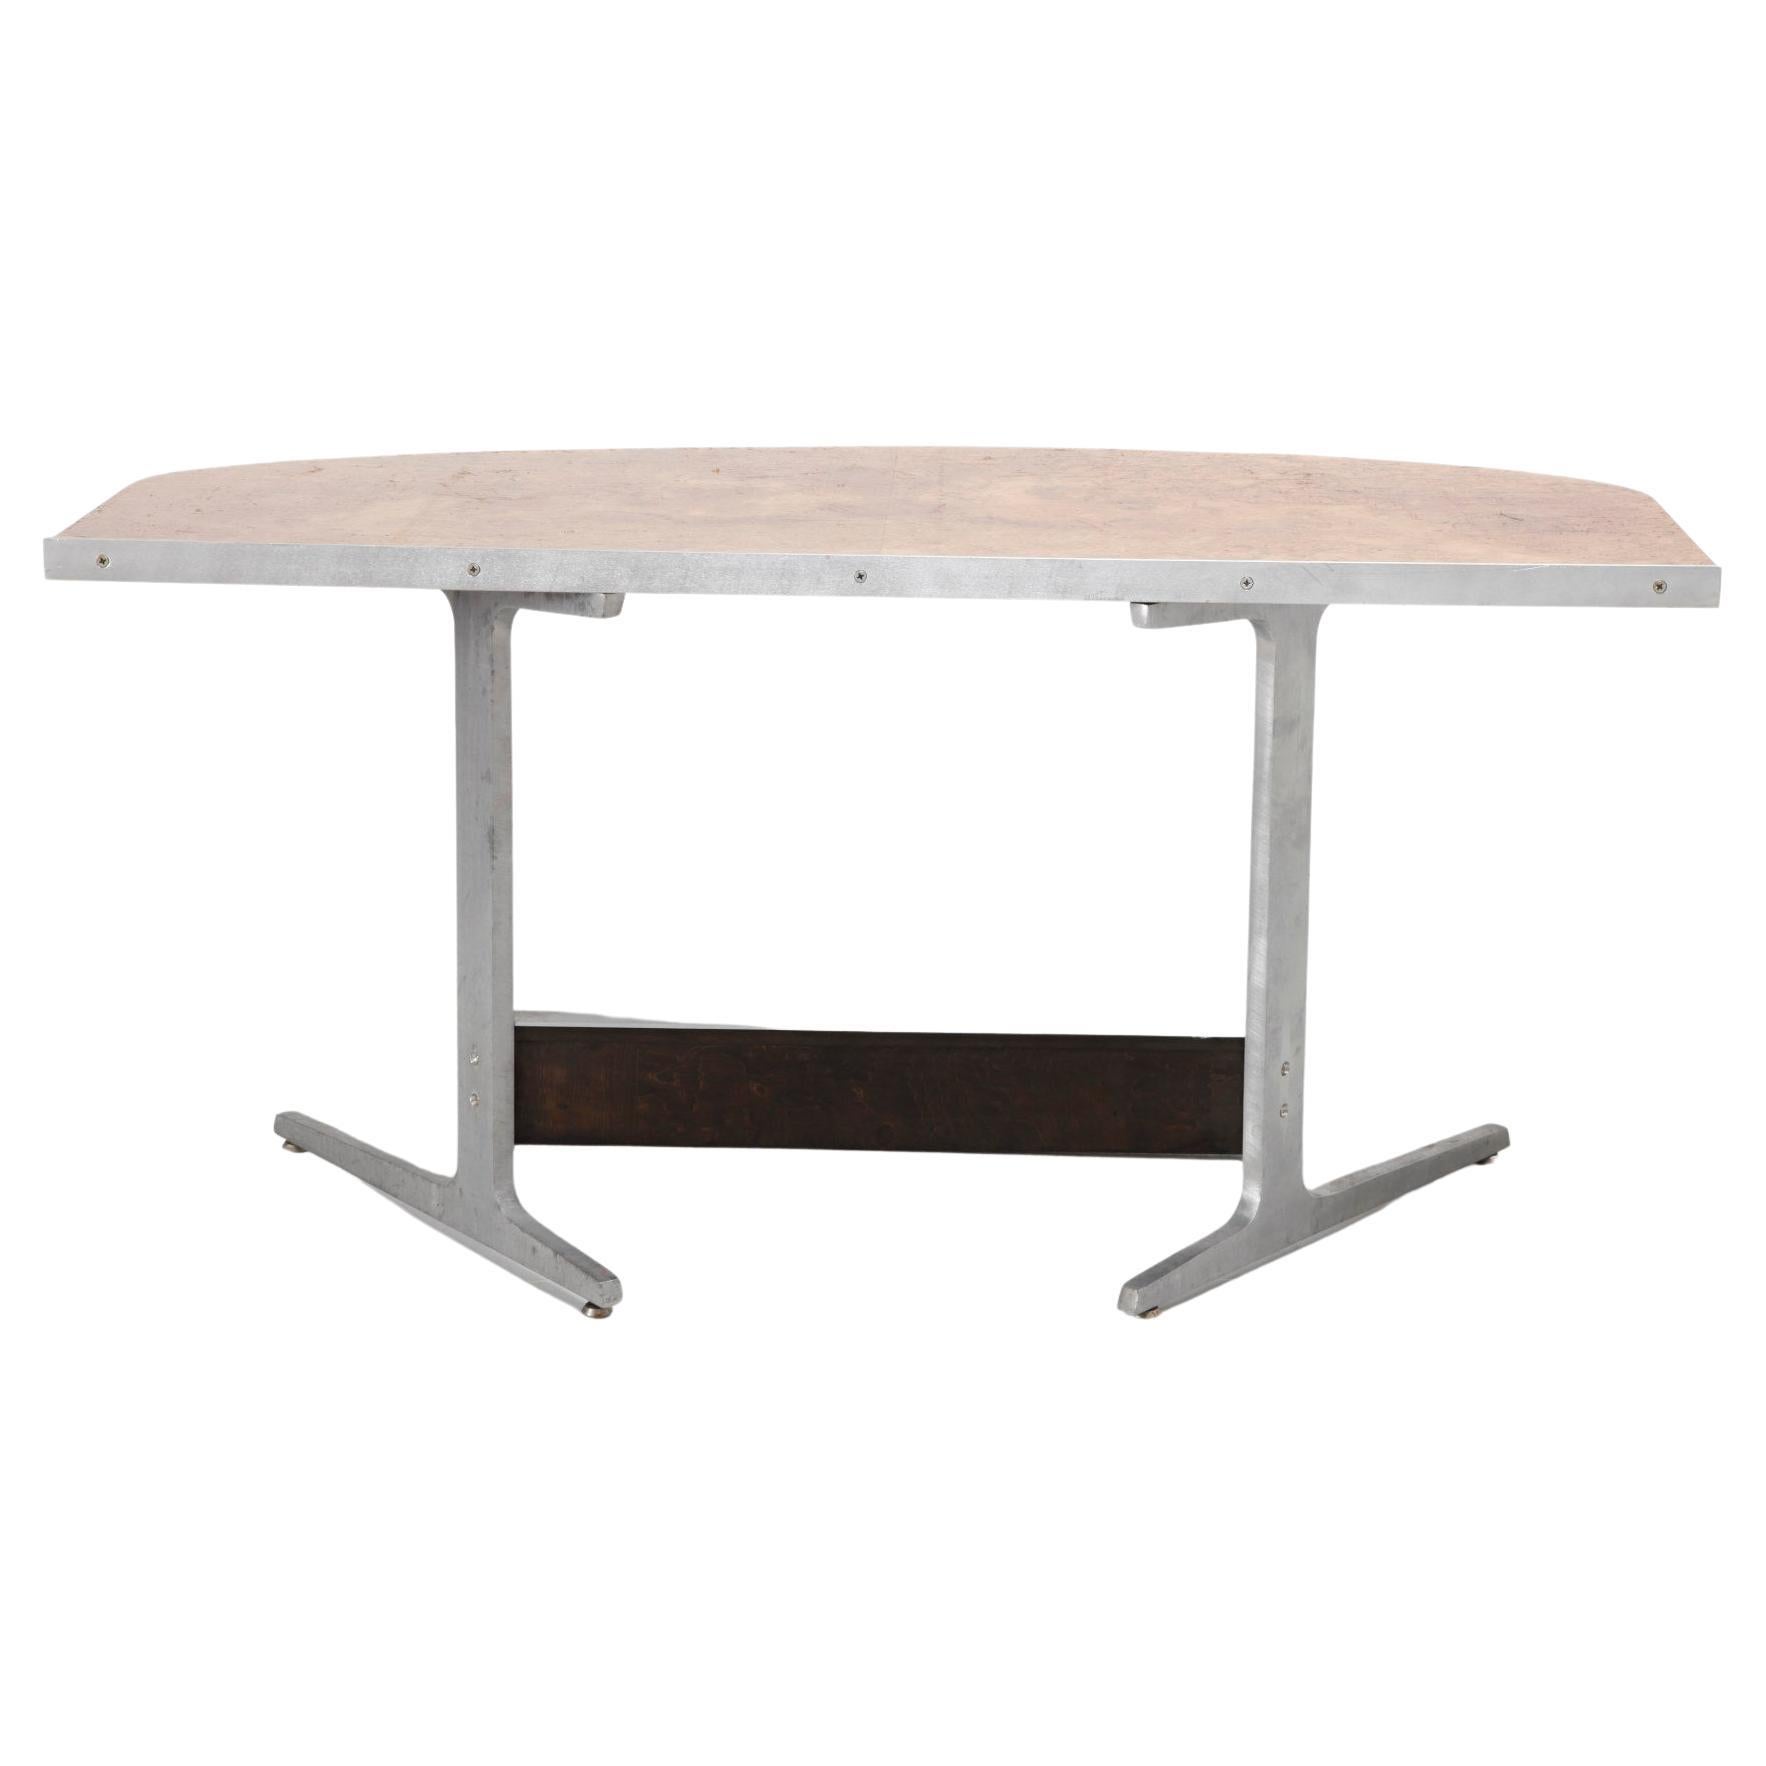 Seltener minimalistischer Schreibtisch aus Wurzelholz mit massiver Holzplatte und Aluminiumfuß. Die Tischplatte hat einen schwebenden Effekt. Ein perfekter Schreibtisch, Tisch oder Konsole an der Wand zu platzieren, weil seine konturierte Rückseite